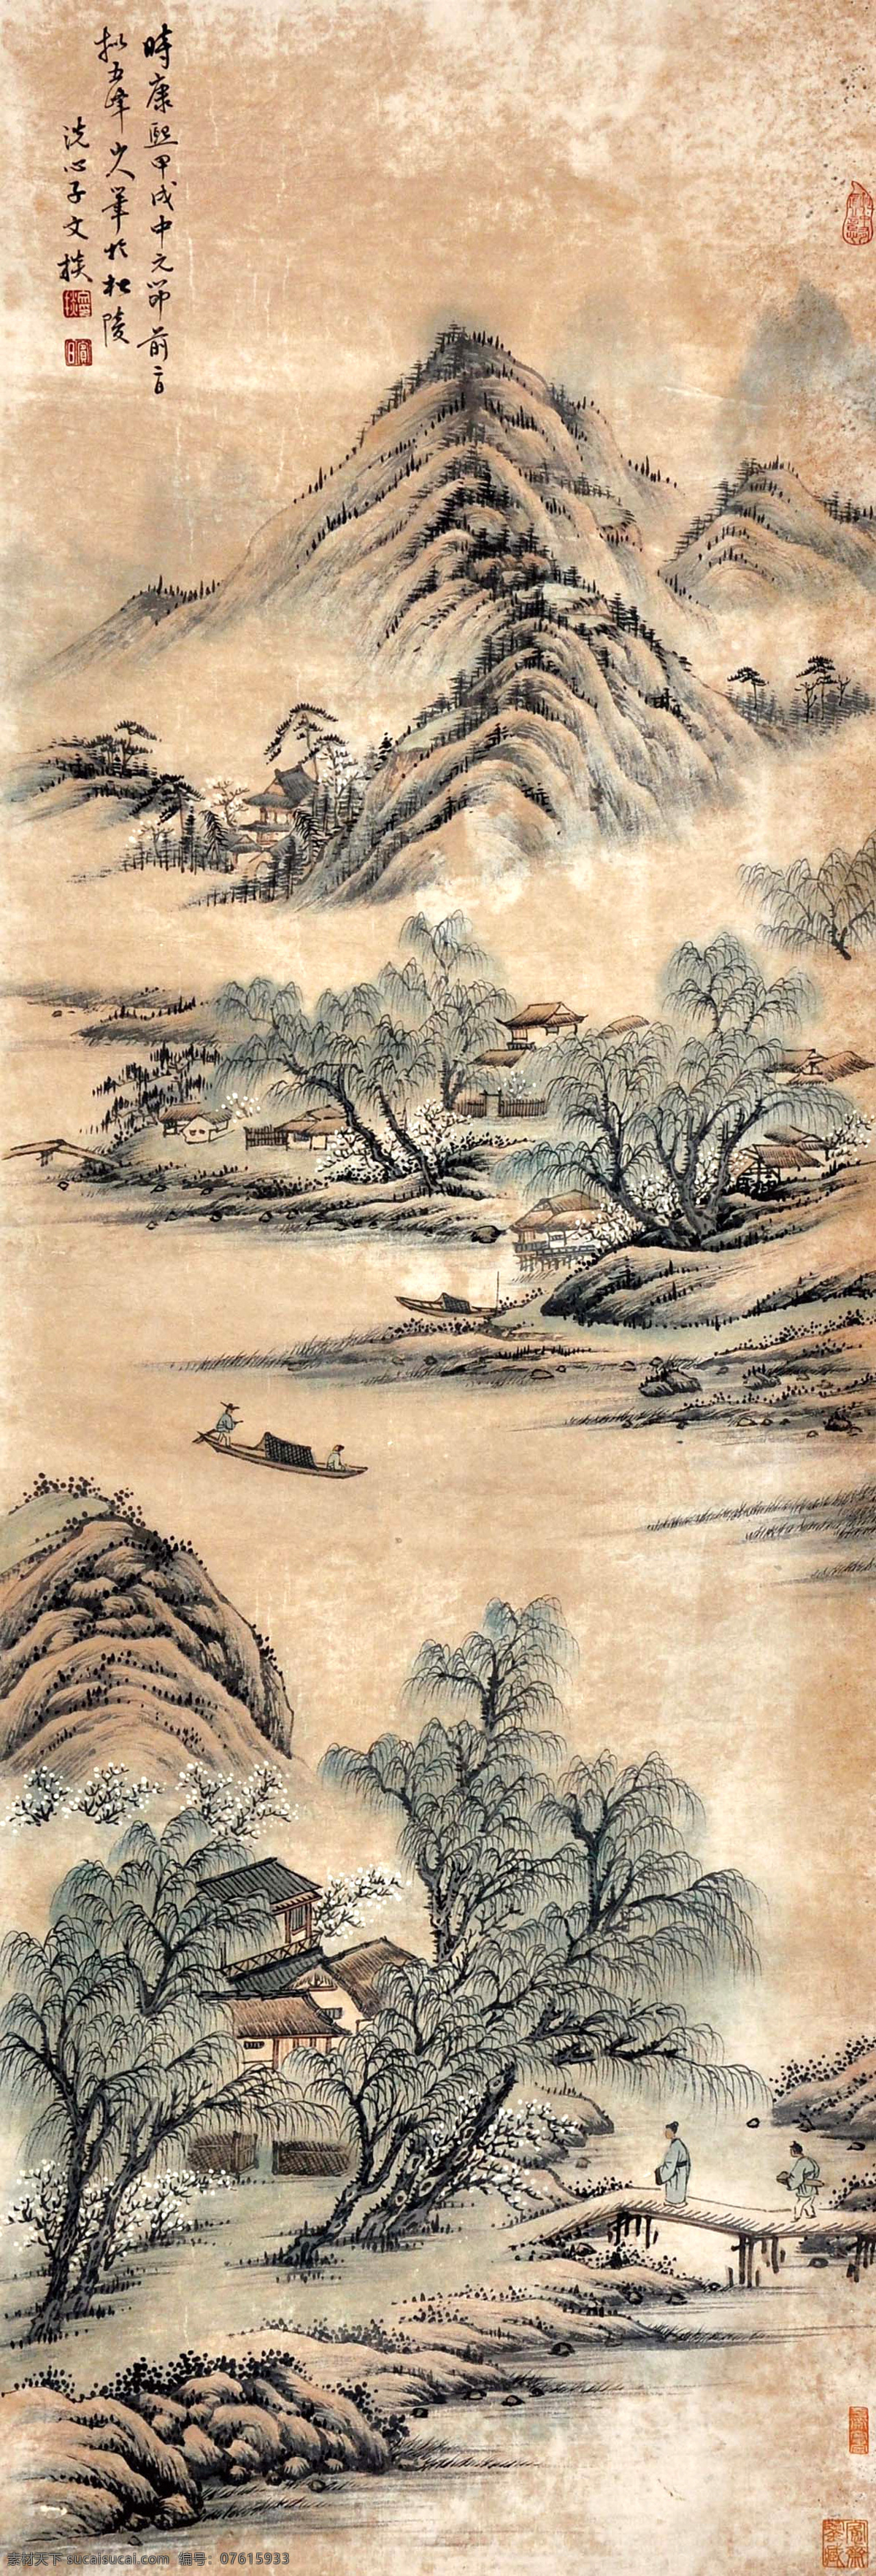 文掞 青绿山水 写意 水墨画 国画 中国画 传统画 名家 绘画 艺术 文化艺术 绘画书法